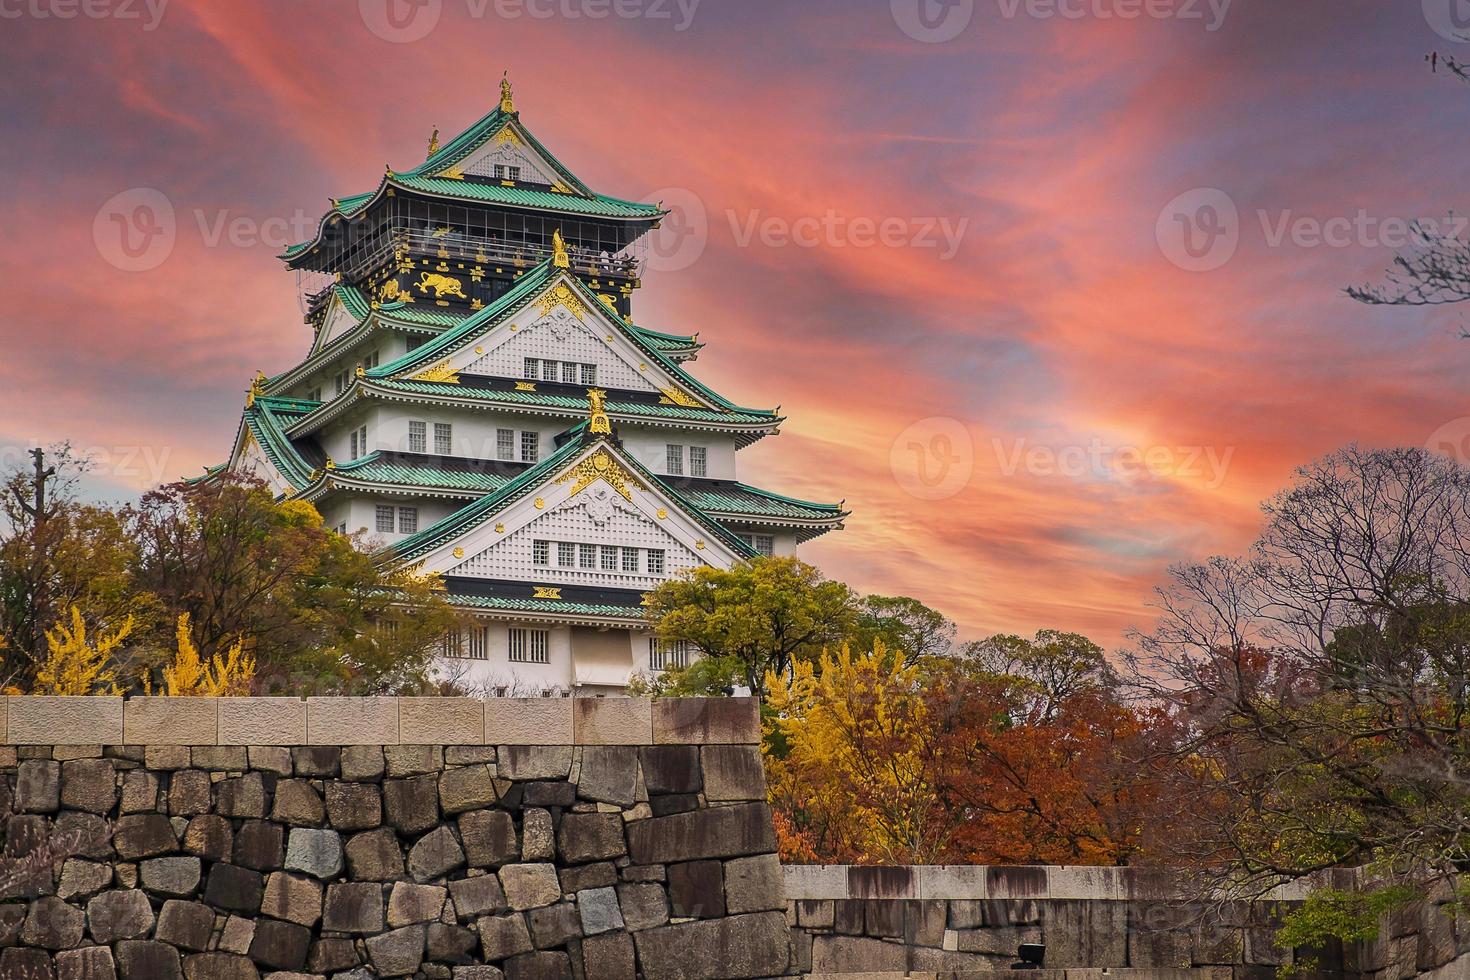 osaka-kasteel in het herfstgebladerteseizoen, is een beroemd japans kasteel, oriëntatiepunt en populair voor toeristische attracties in osaka, kansai, japan foto